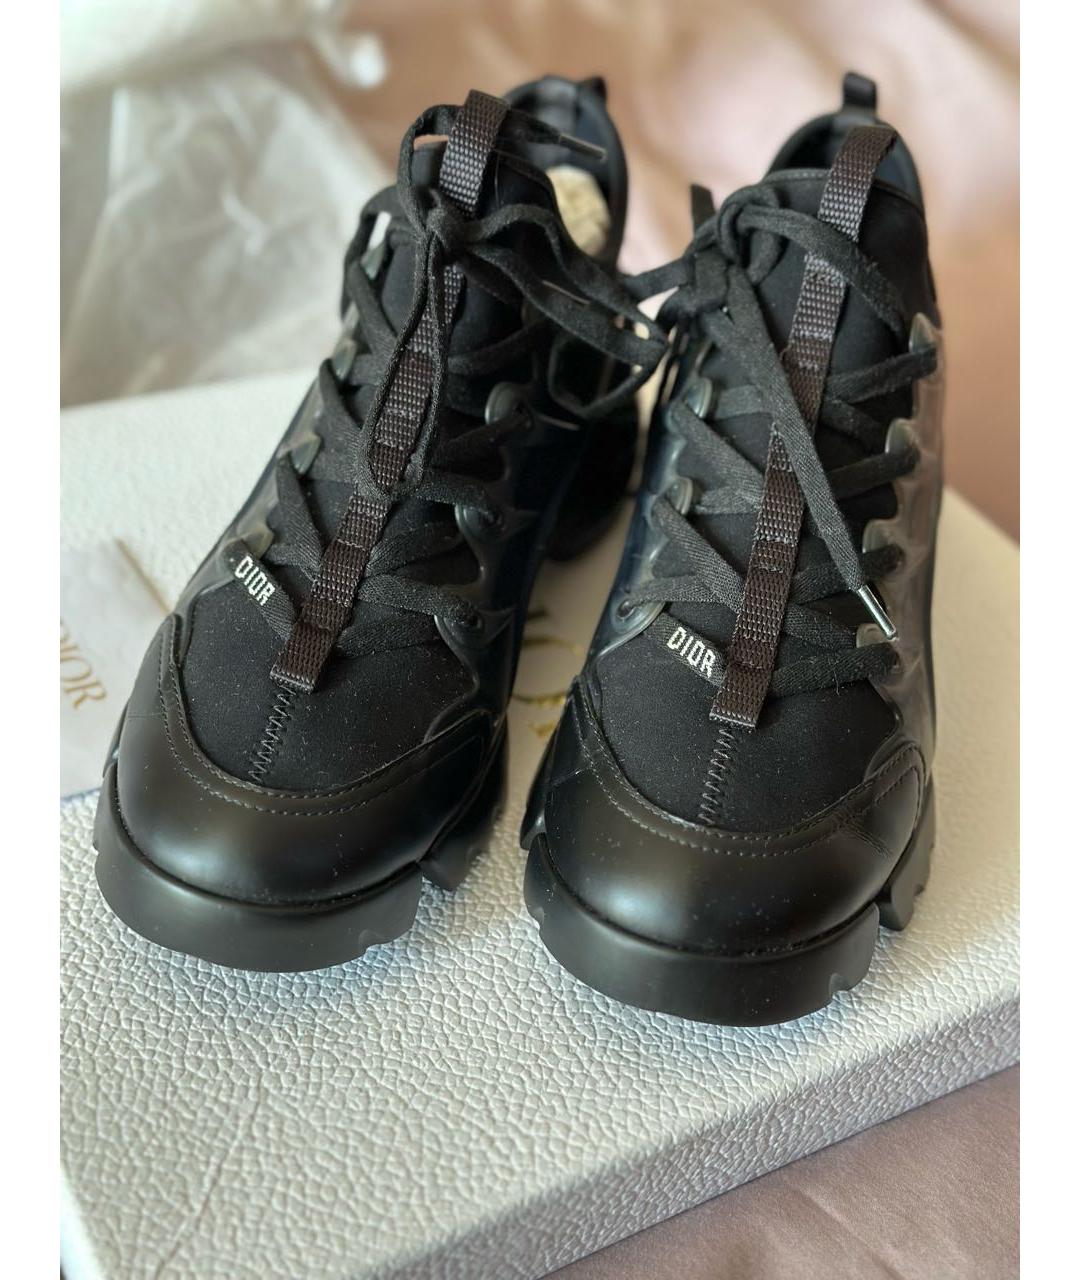 CHRISTIAN DIOR PRE-OWNED Черные кожаные кроссовки, фото 2